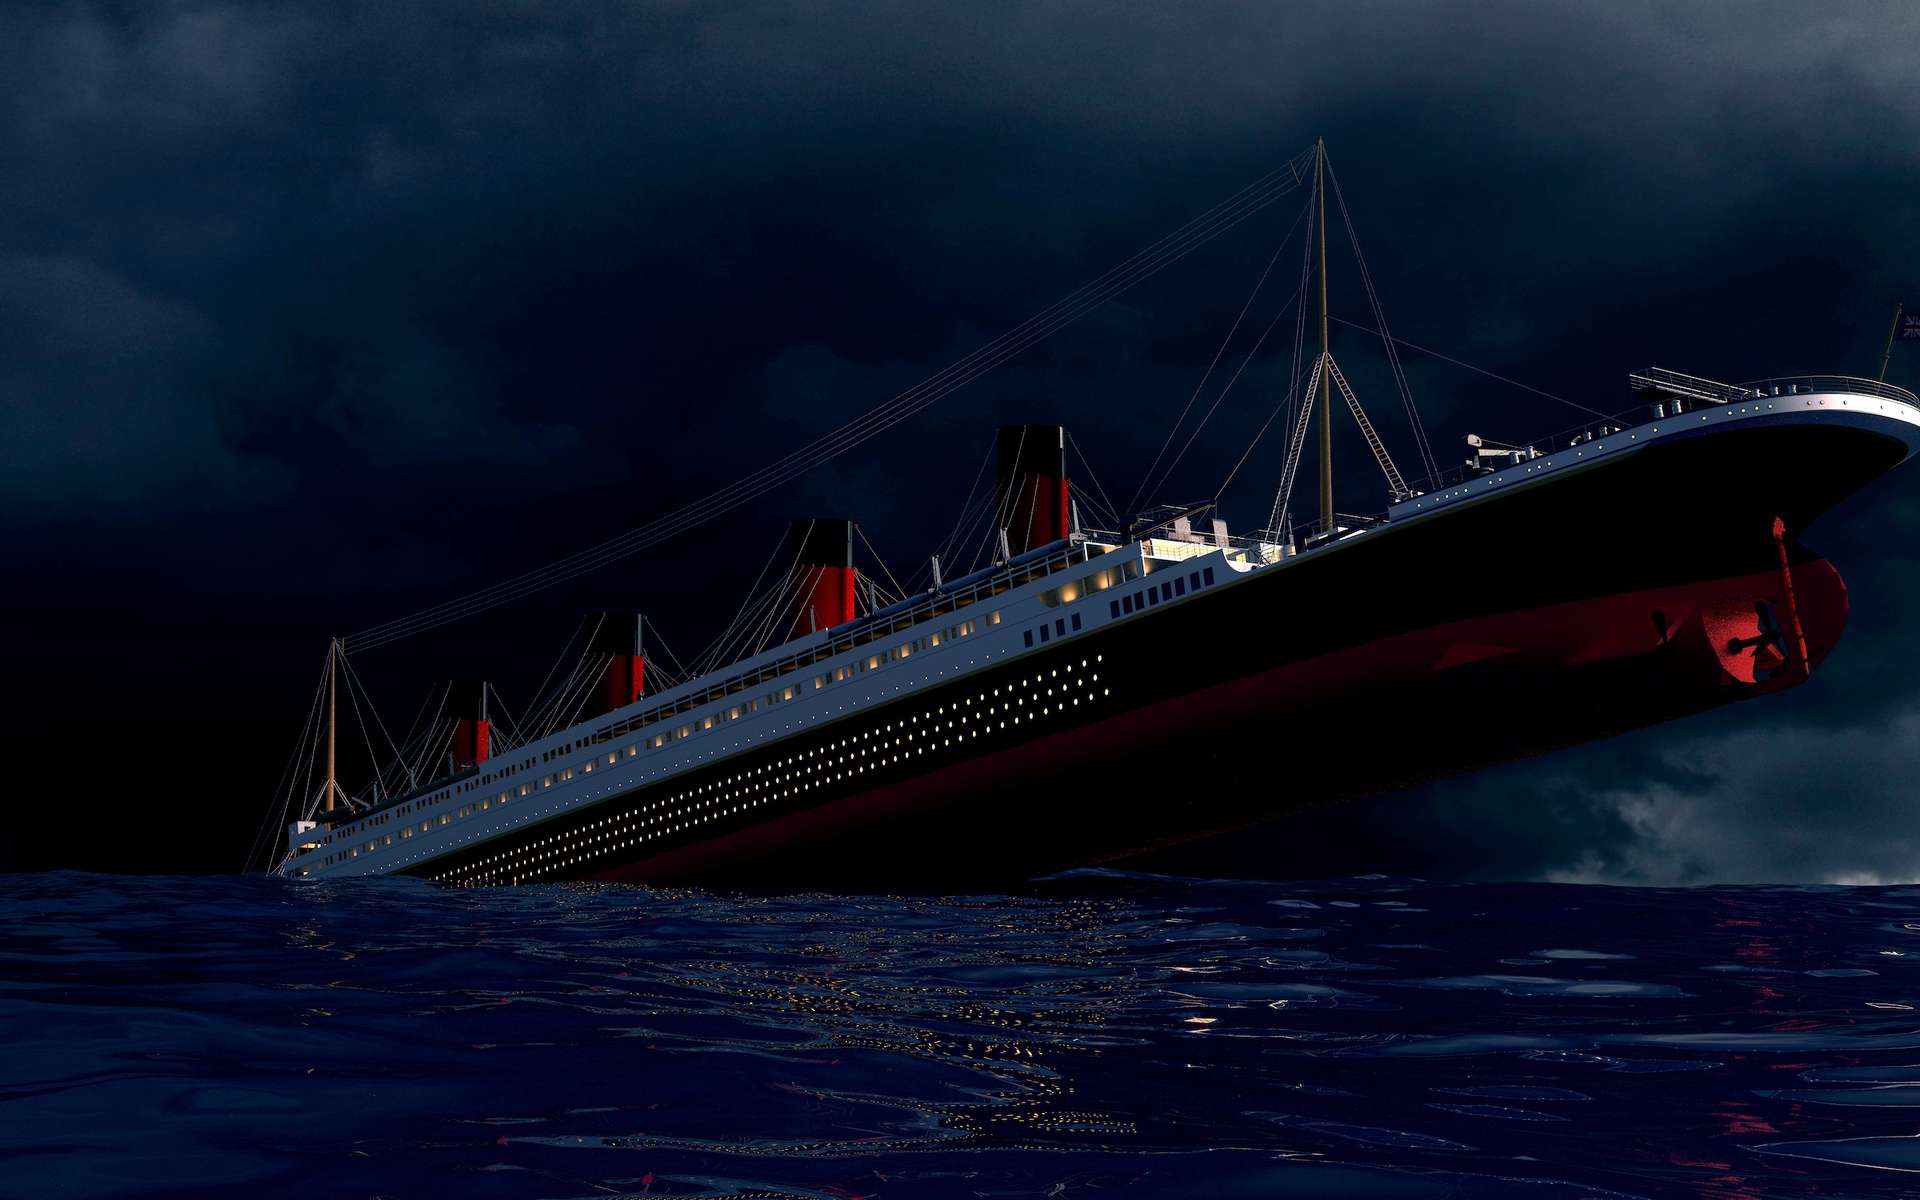 L'épave du Titanic comme vous ne l'avez jamais vue, en vidéo 8K !